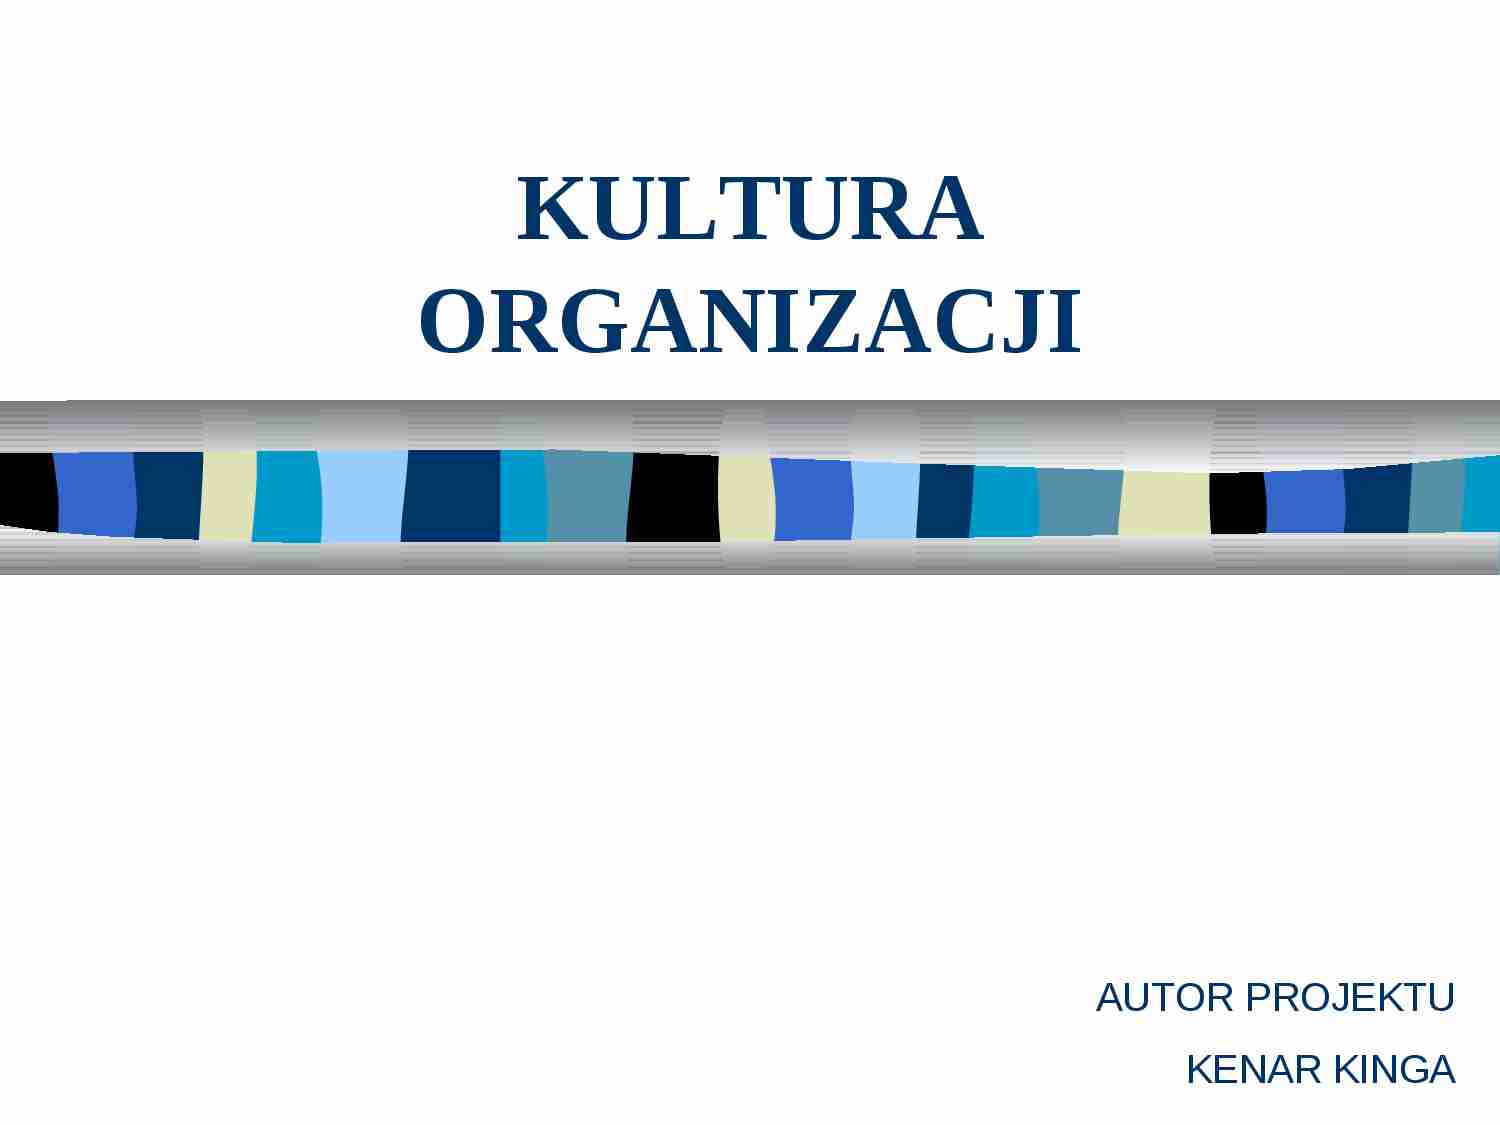 Kultura organizacji- prezentacja multimedialna - strona 1